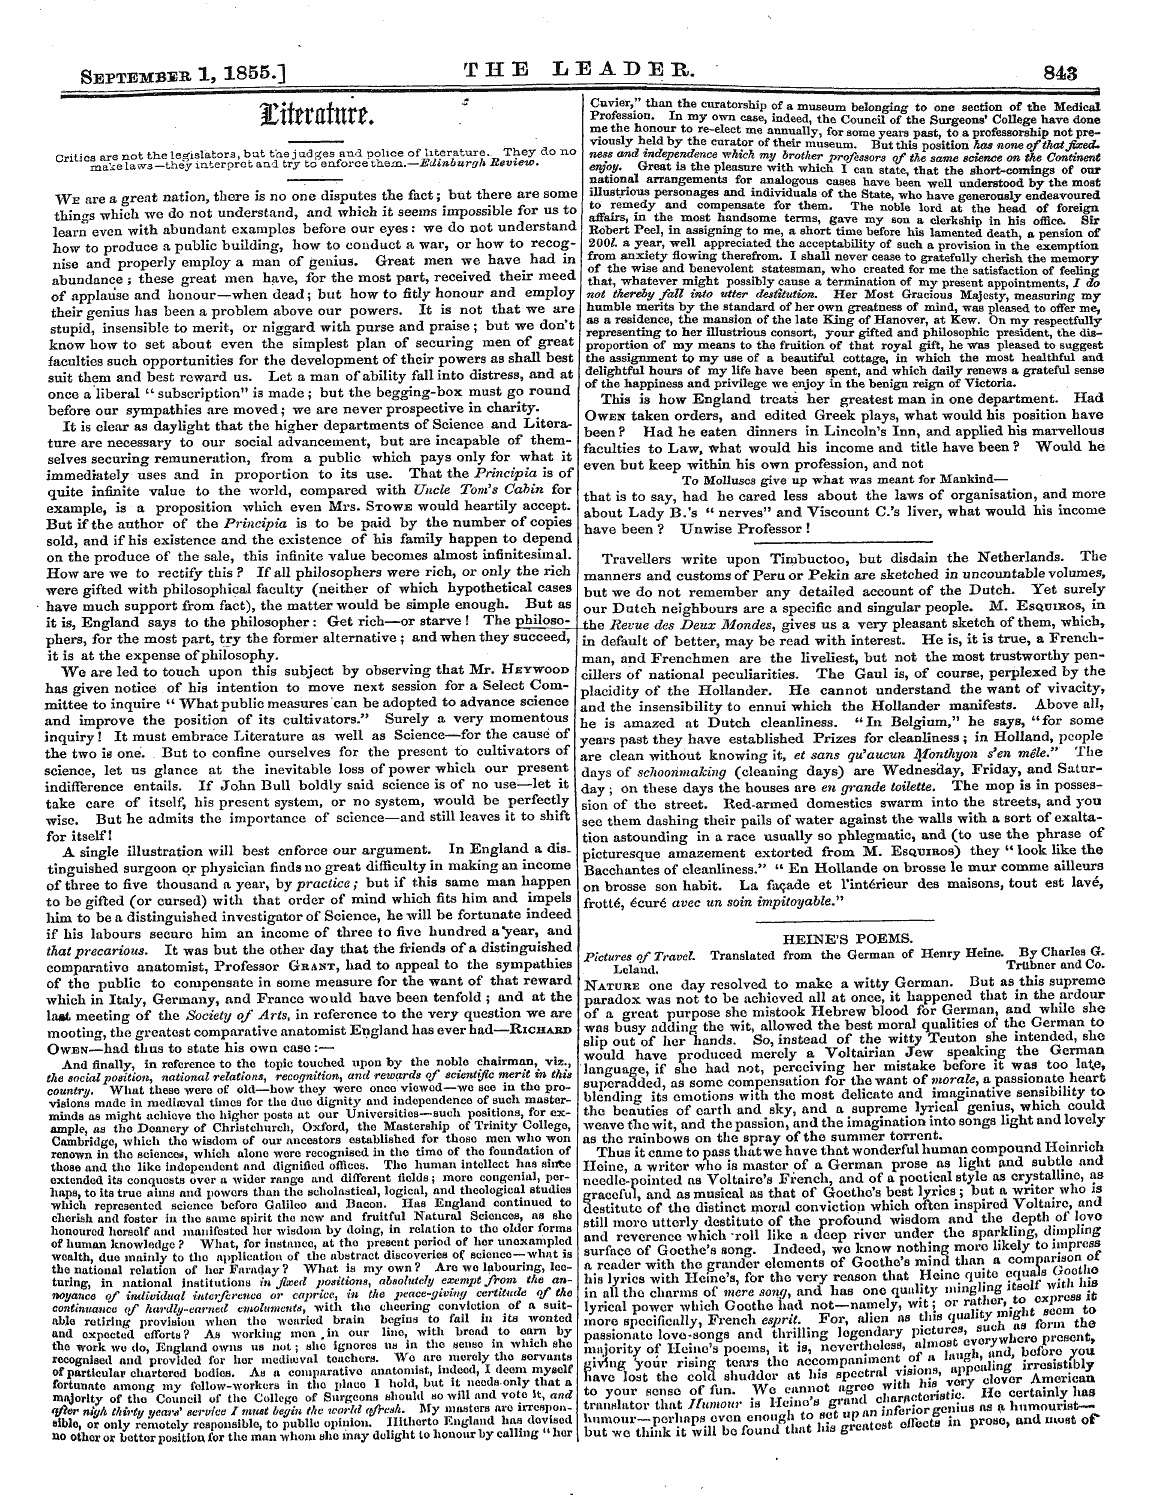 Leader (1850-1860): jS F Y, 2nd edition - September 1, 1855.] The Leader. 843